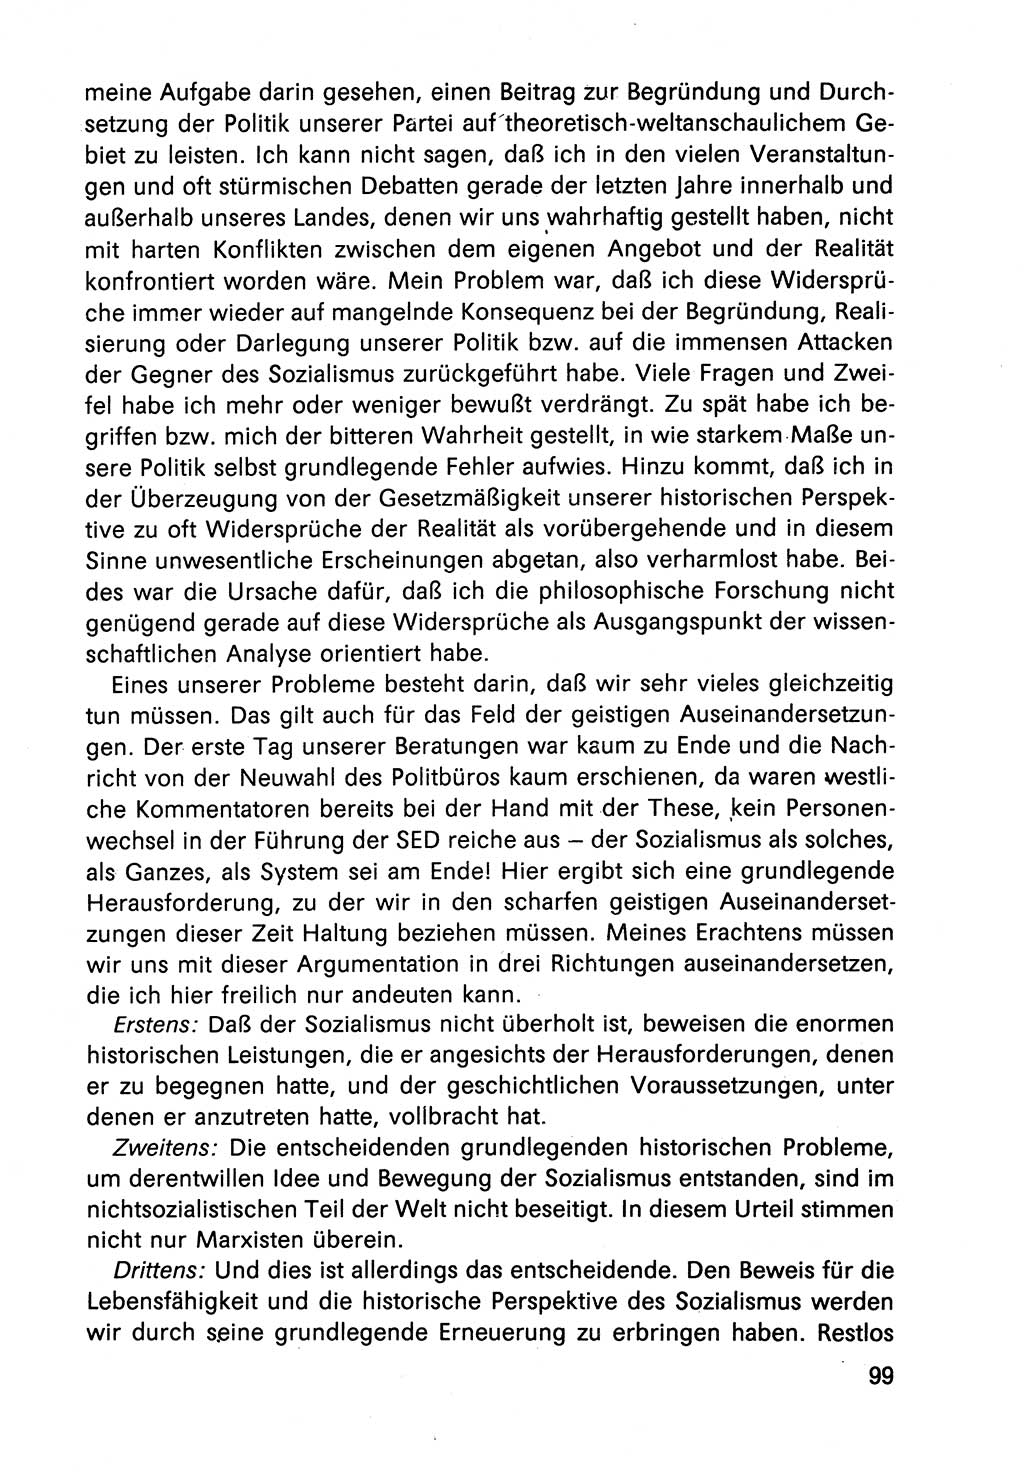 Diskussionsbeiträge, 10. Tagung des ZK (Zentralkomitee) der SED (Sozialistische Einheitspartei Deutschlands) [Deutsche Demokratische Republik (DDR)] 1989, Seite 99 (Disk.-Beitr. 10. Tg. ZK SED DDR 1989, S. 99)